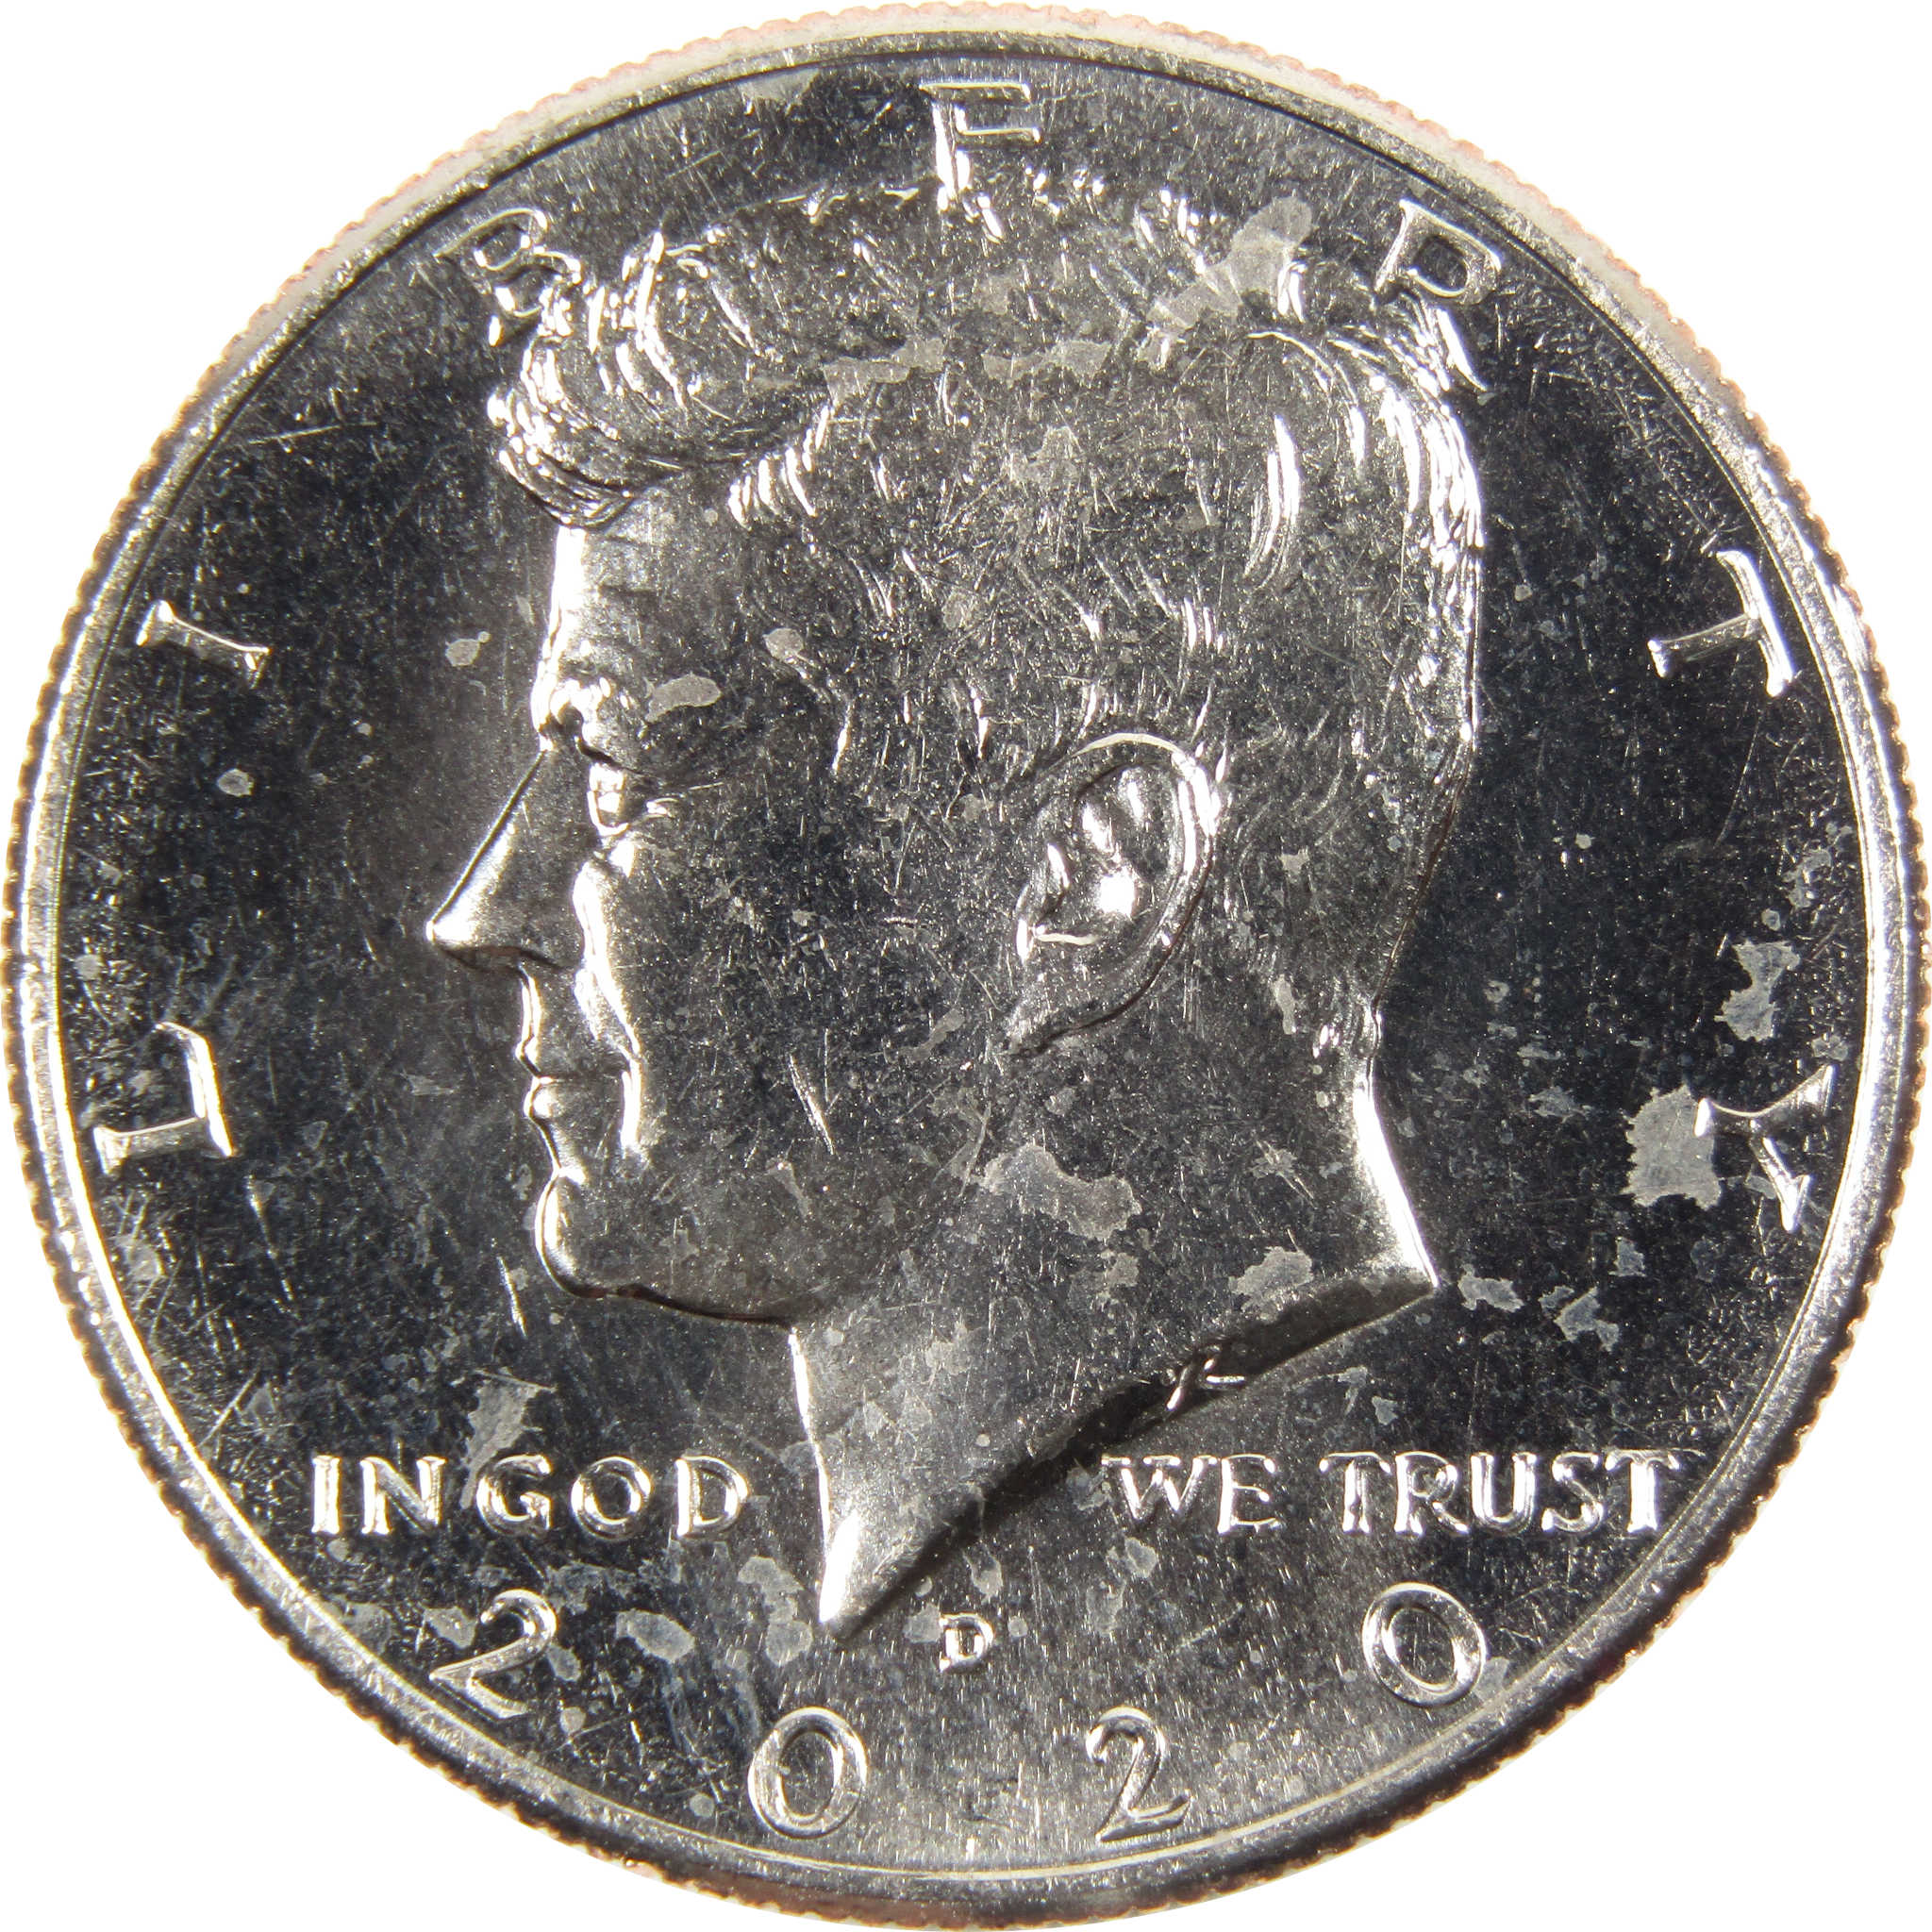 2020 D Kennedy Half Dollar BU Uncirculated Clad 50c Coin